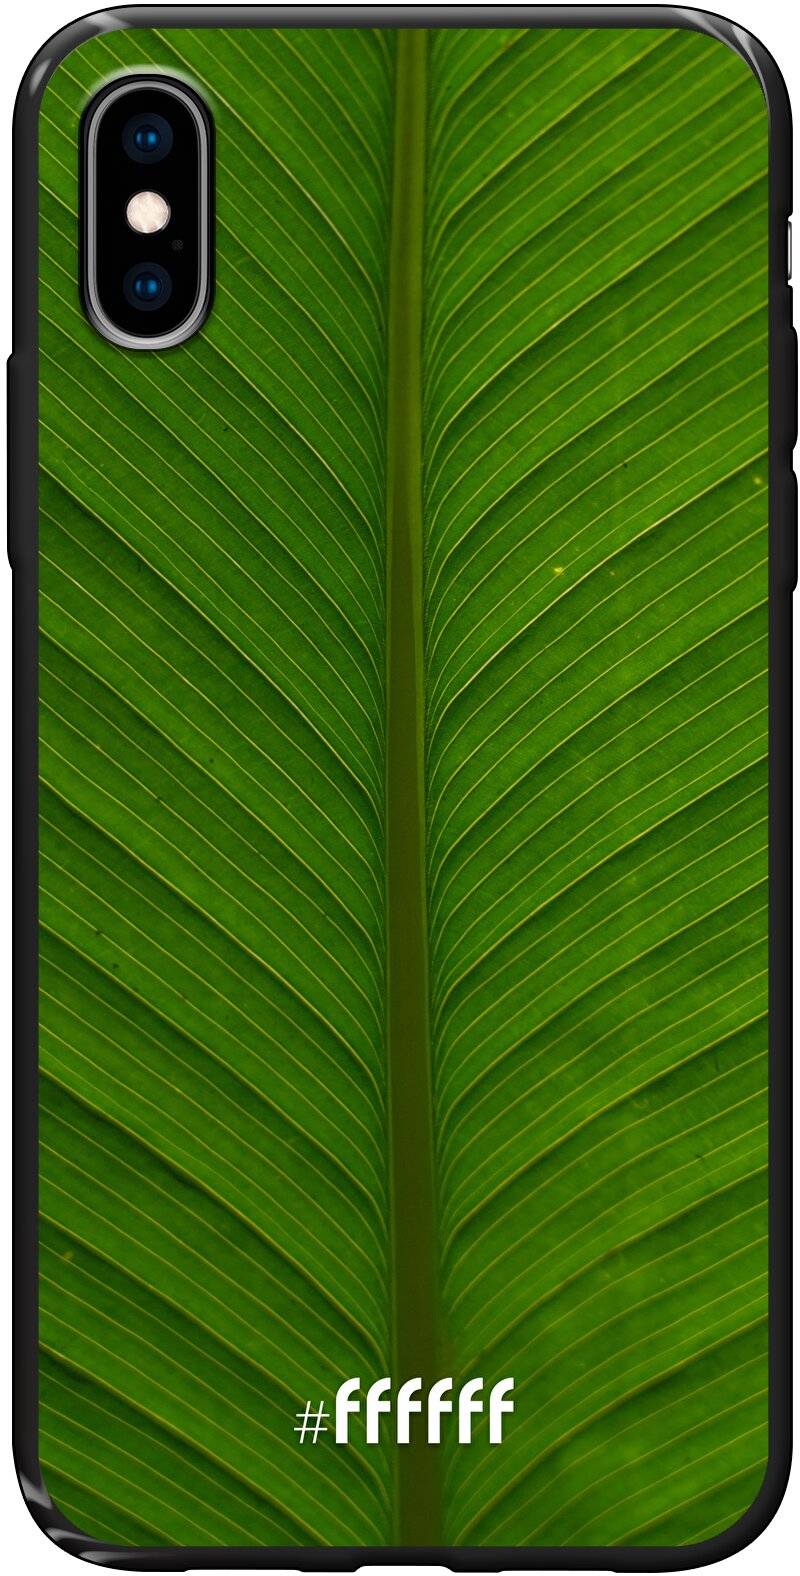 Unseen Green iPhone X